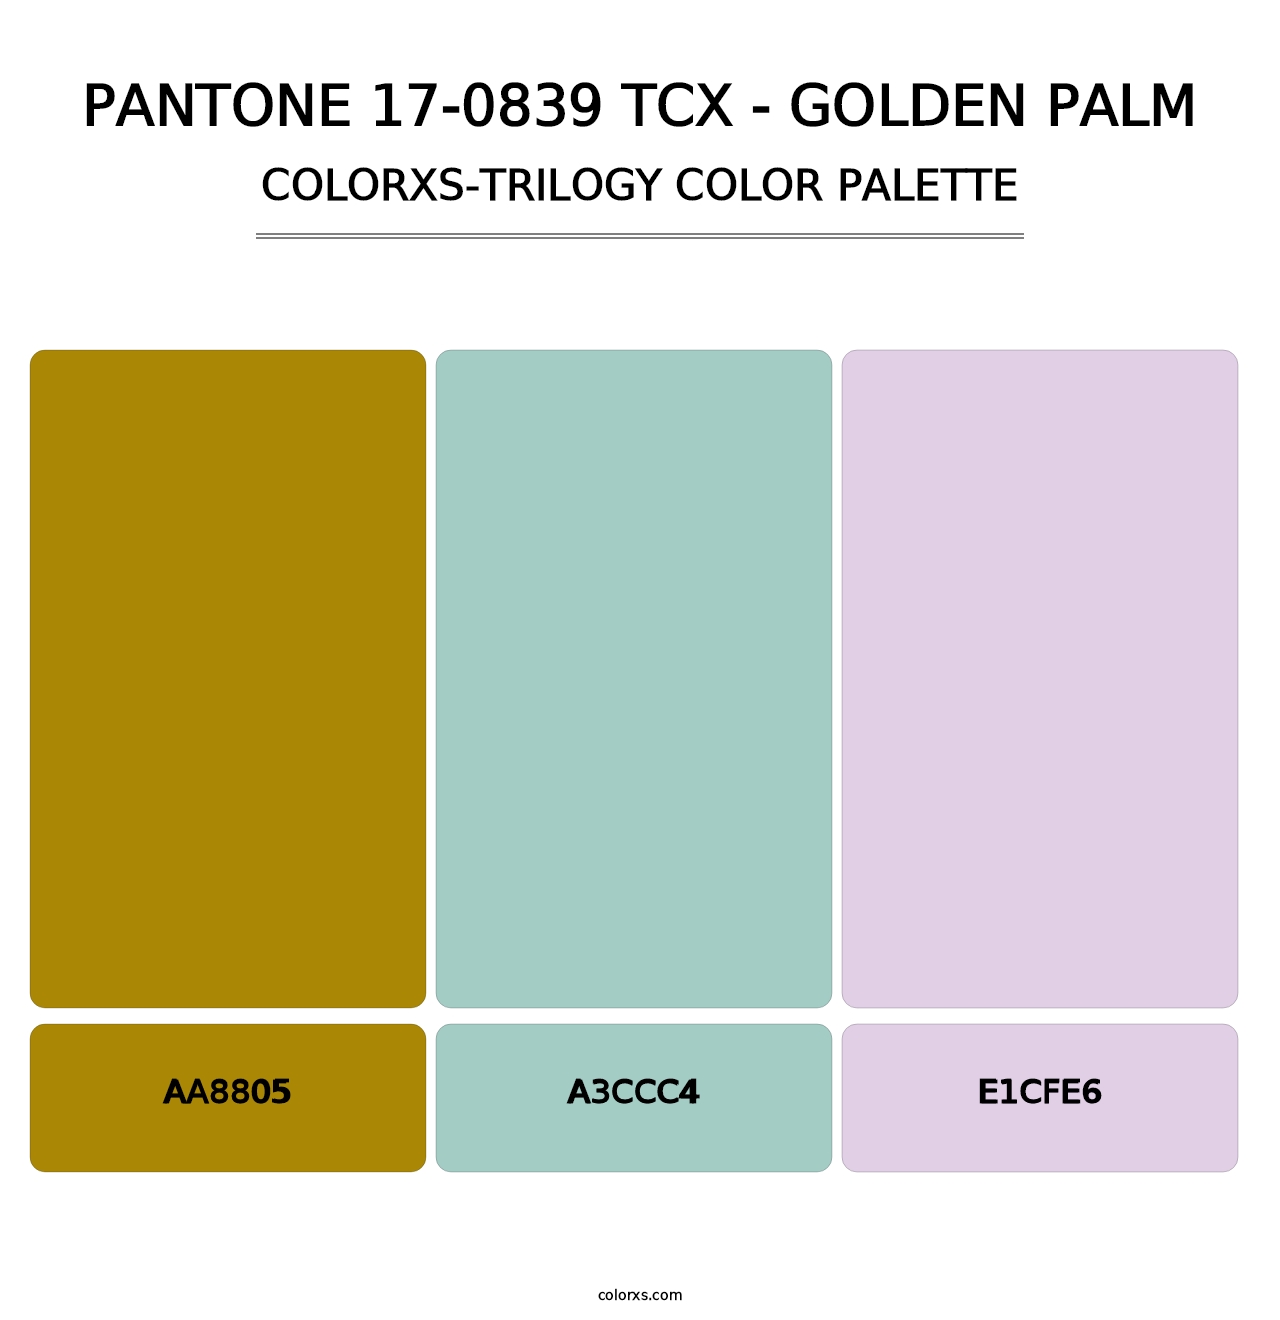 PANTONE 17-0839 TCX - Golden Palm - Colorxs Trilogy Palette